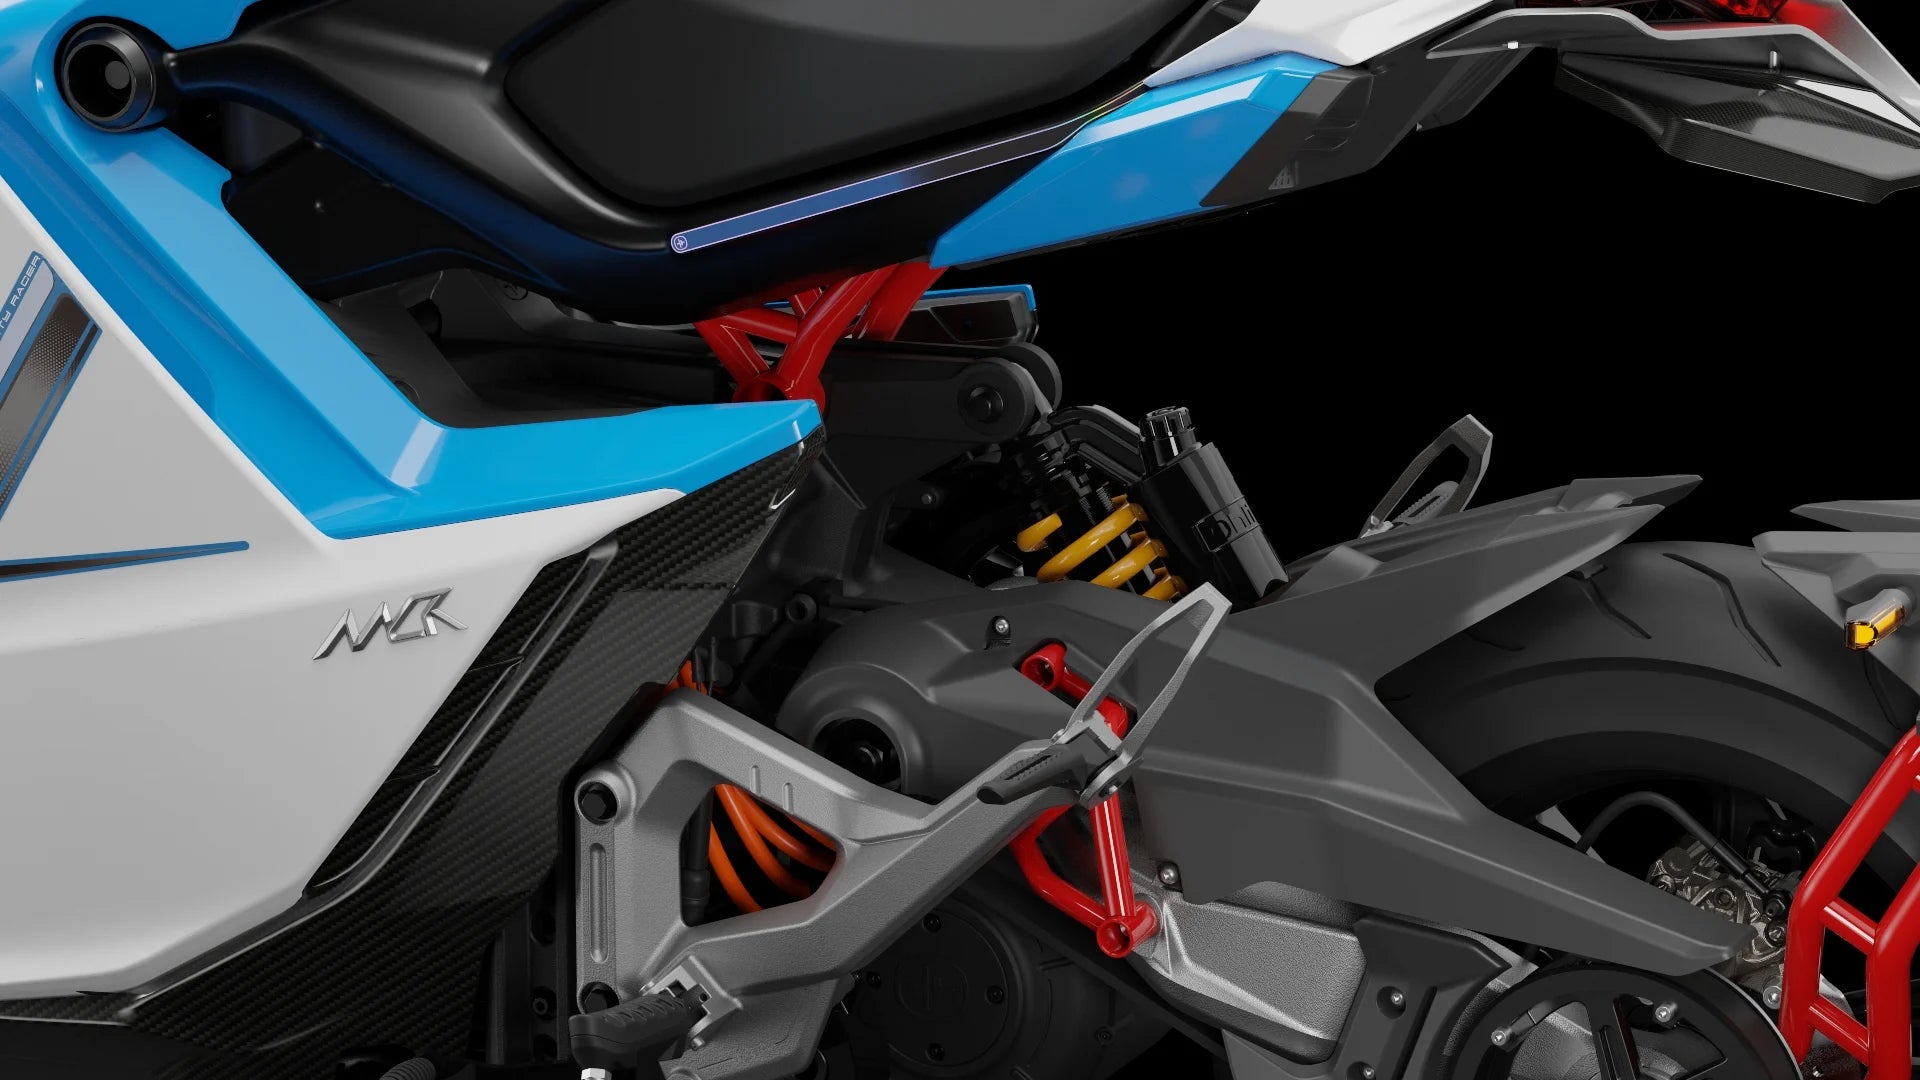 Moto électrique, OVAOBIKE MCR-M | 11 000 W | 125 cc | V-max 130 km/h | Autonomie 230 km - Atom Motors